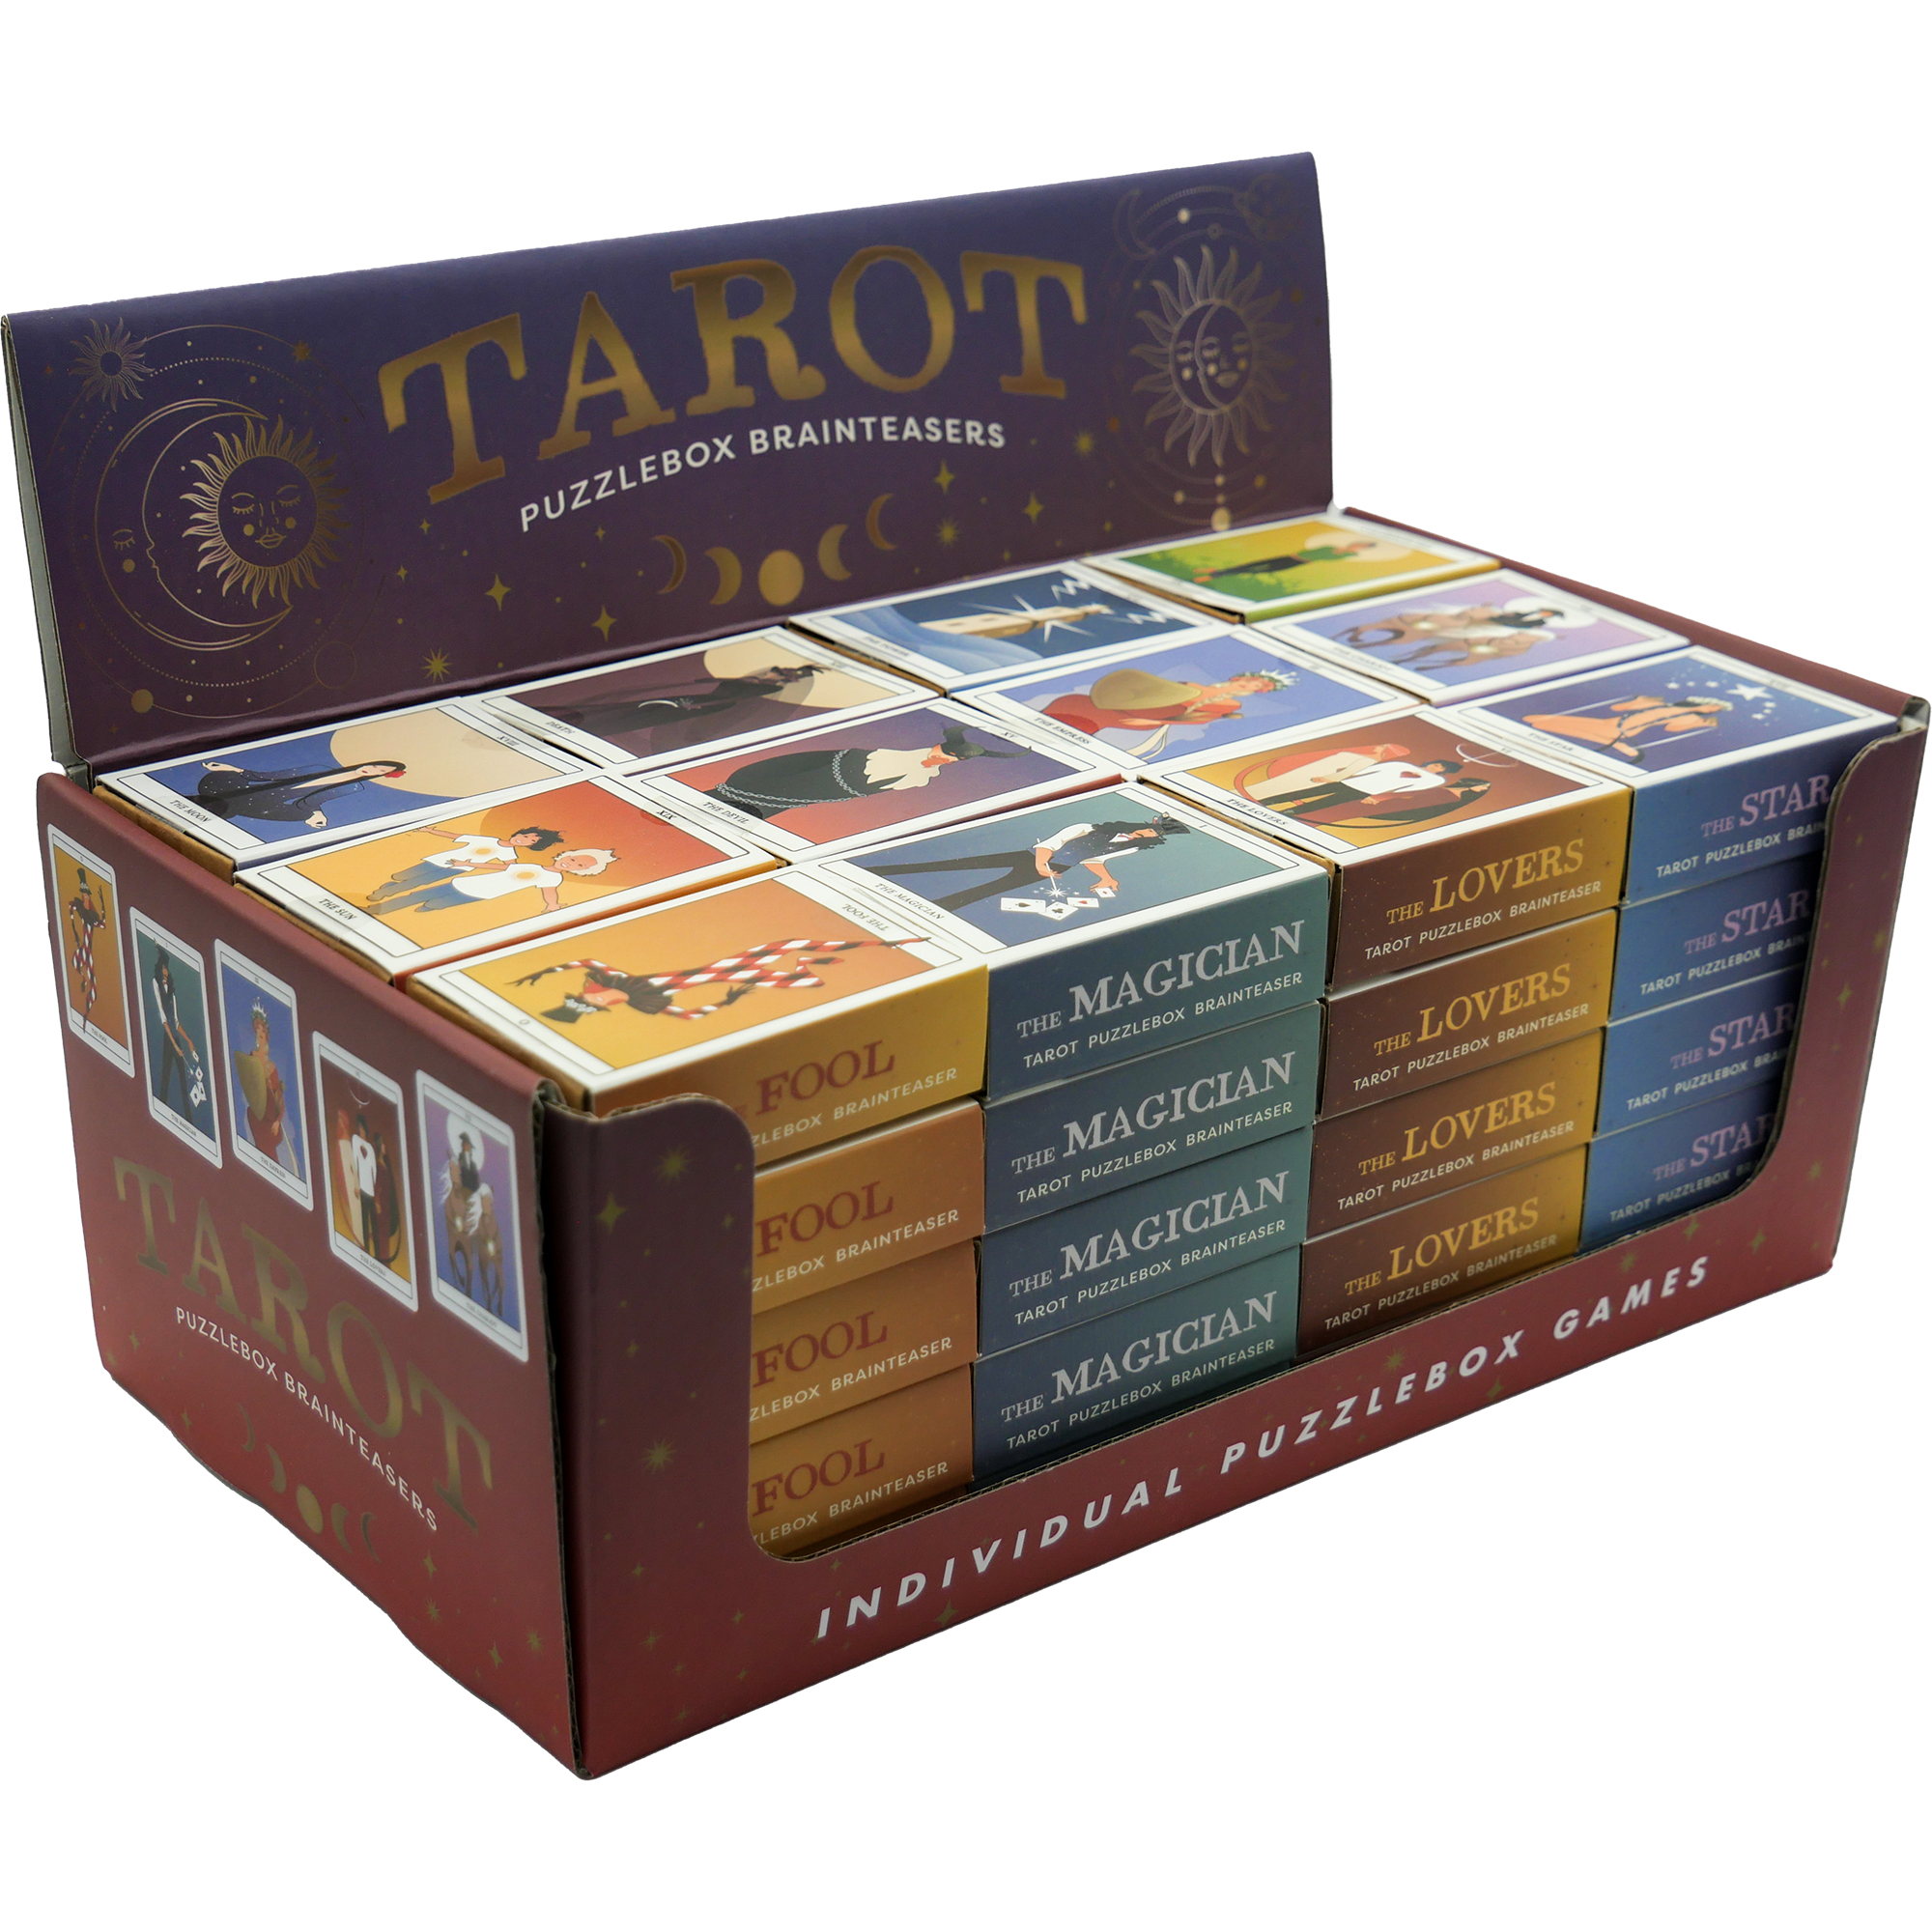 Tarot Puzzlebox Brainteaser Games